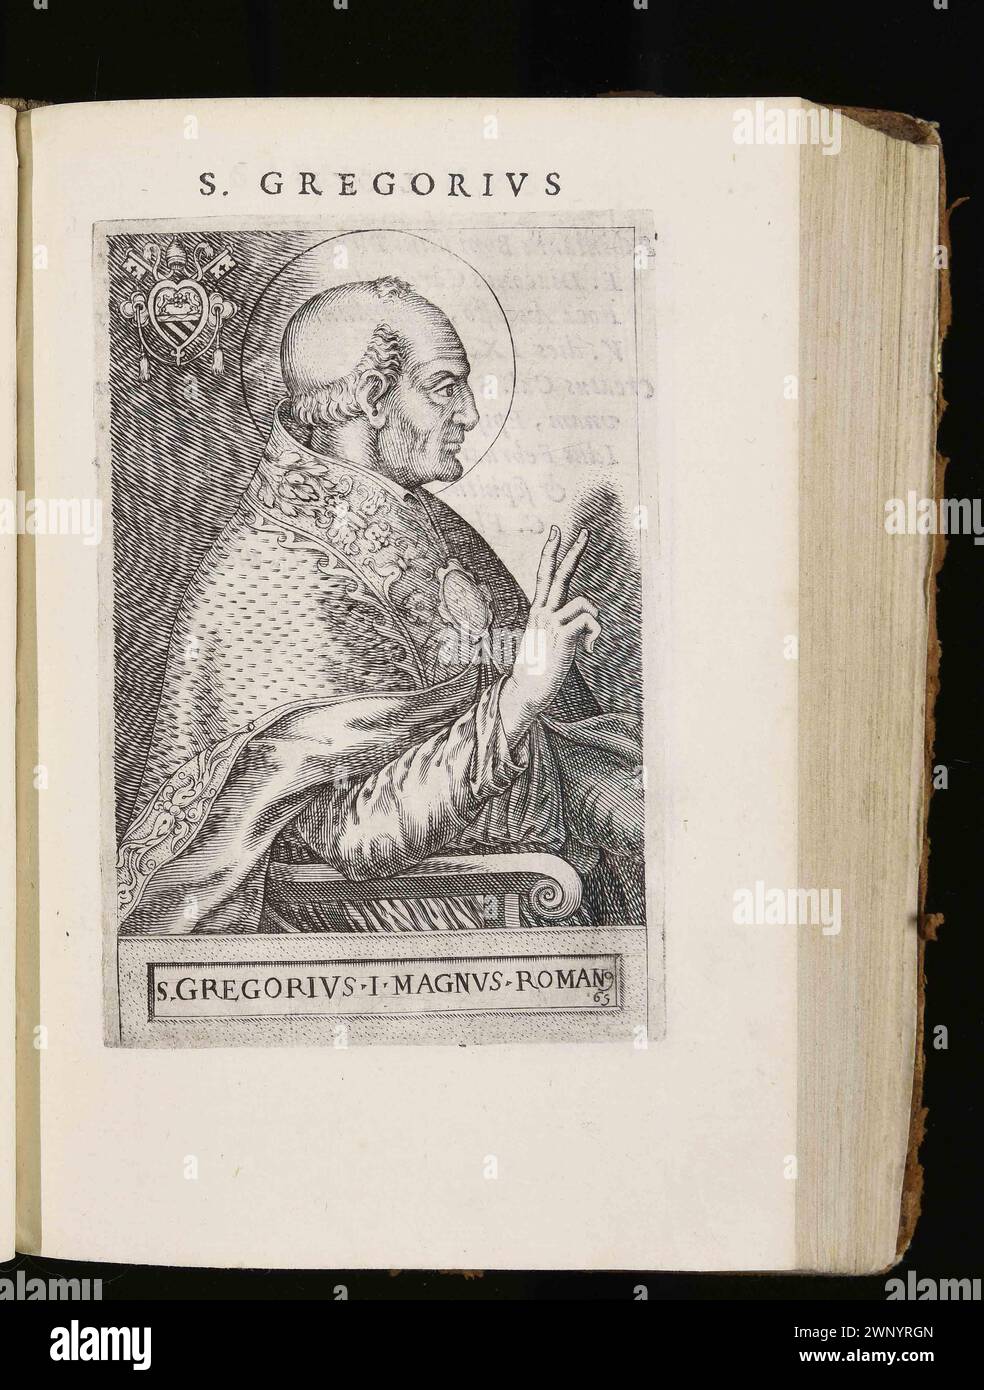 Un'incisione del 1580 di Papa Gregorio i (noto anche come San Gregorio Magno) che fu pontefice dall'AD590 all'AD604. Era il 64° papa. Fu lui che introdusse il canto semplice noto come canto gregoriano. Foto Stock